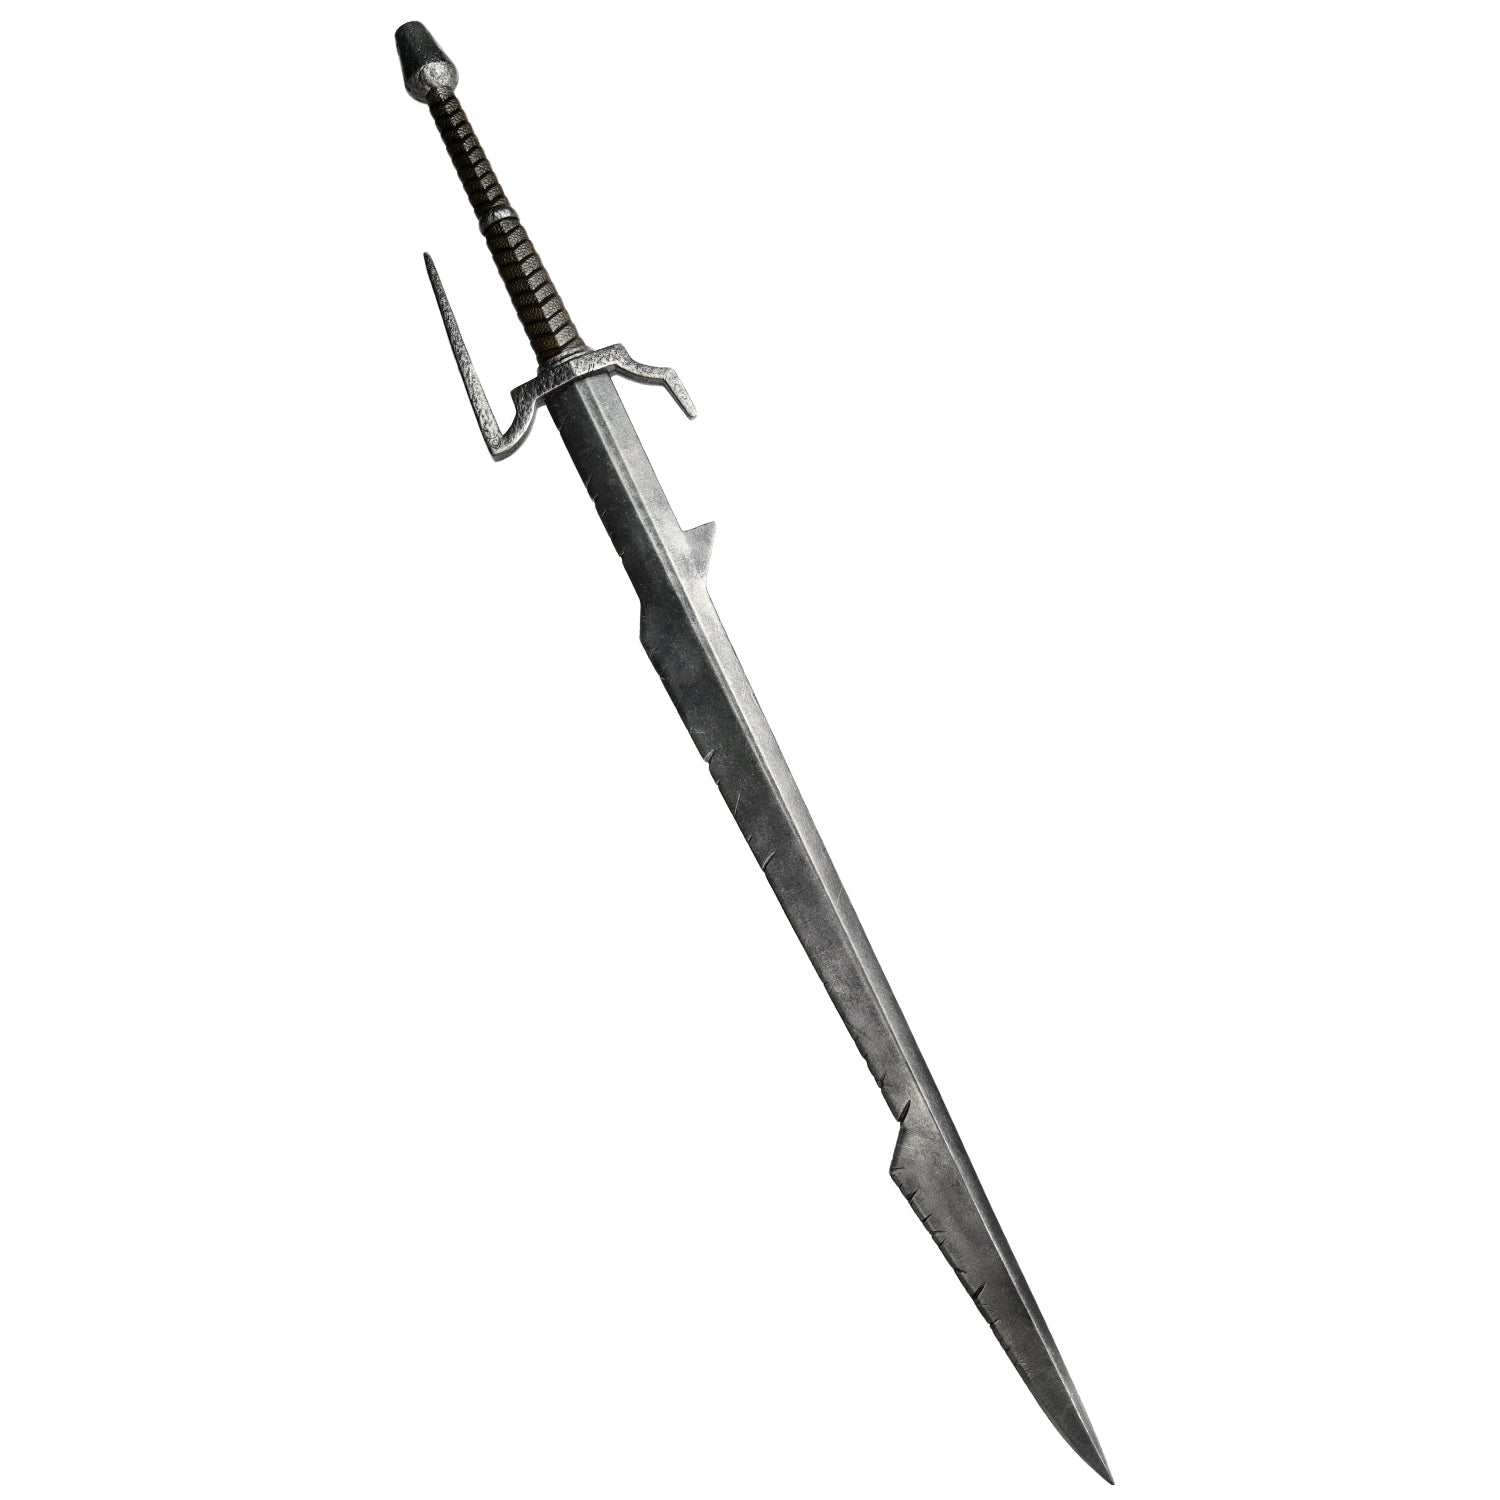 Eredin's Sword